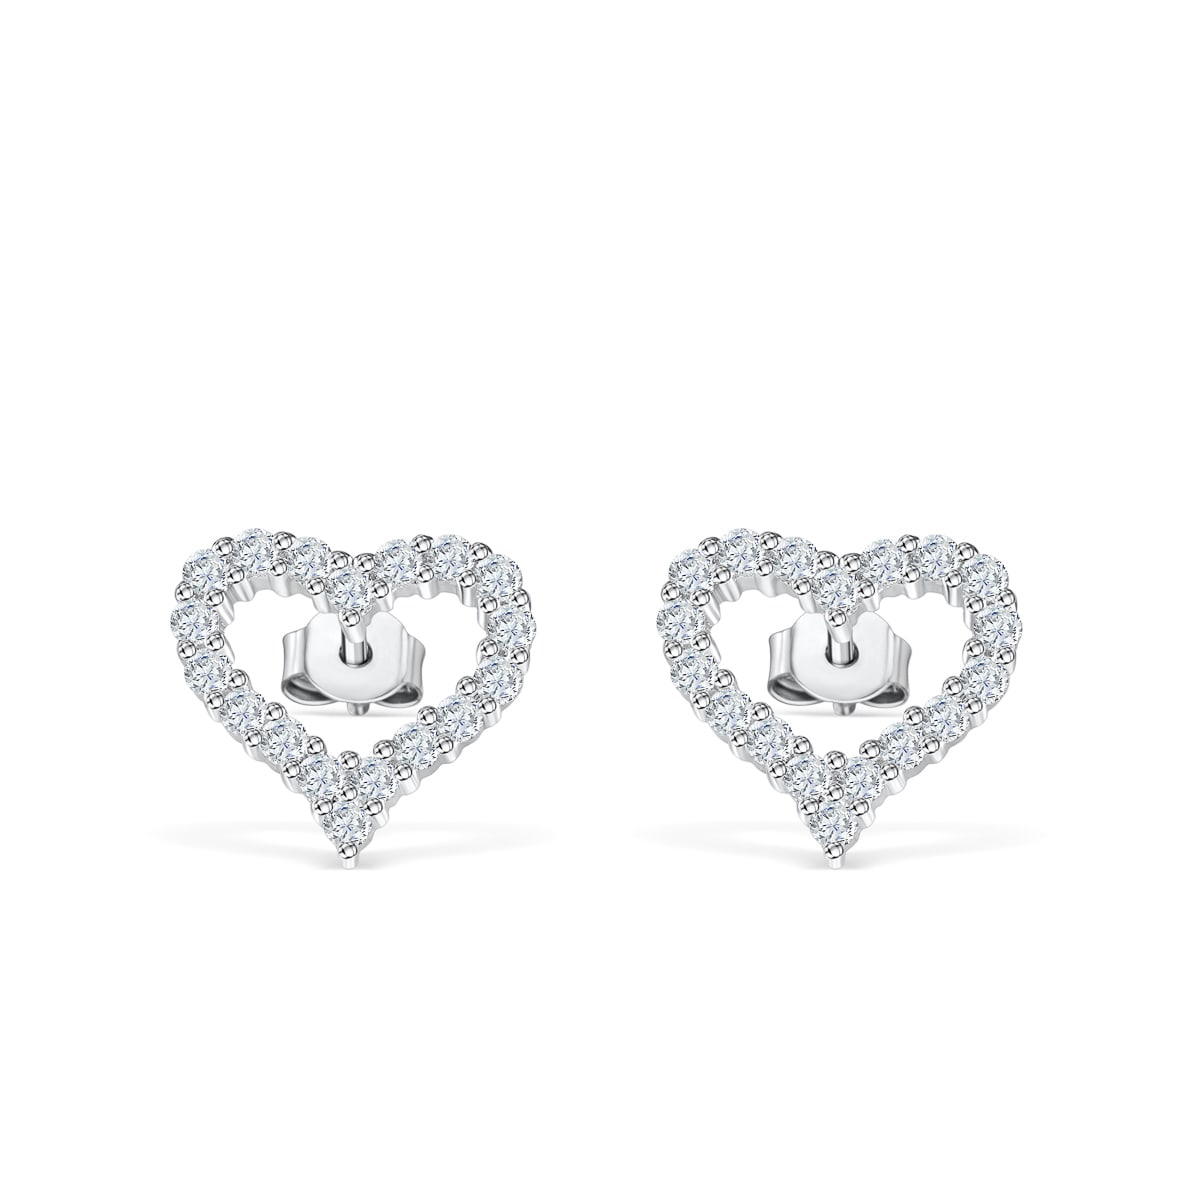 the jasmine silver heart shaped earrings